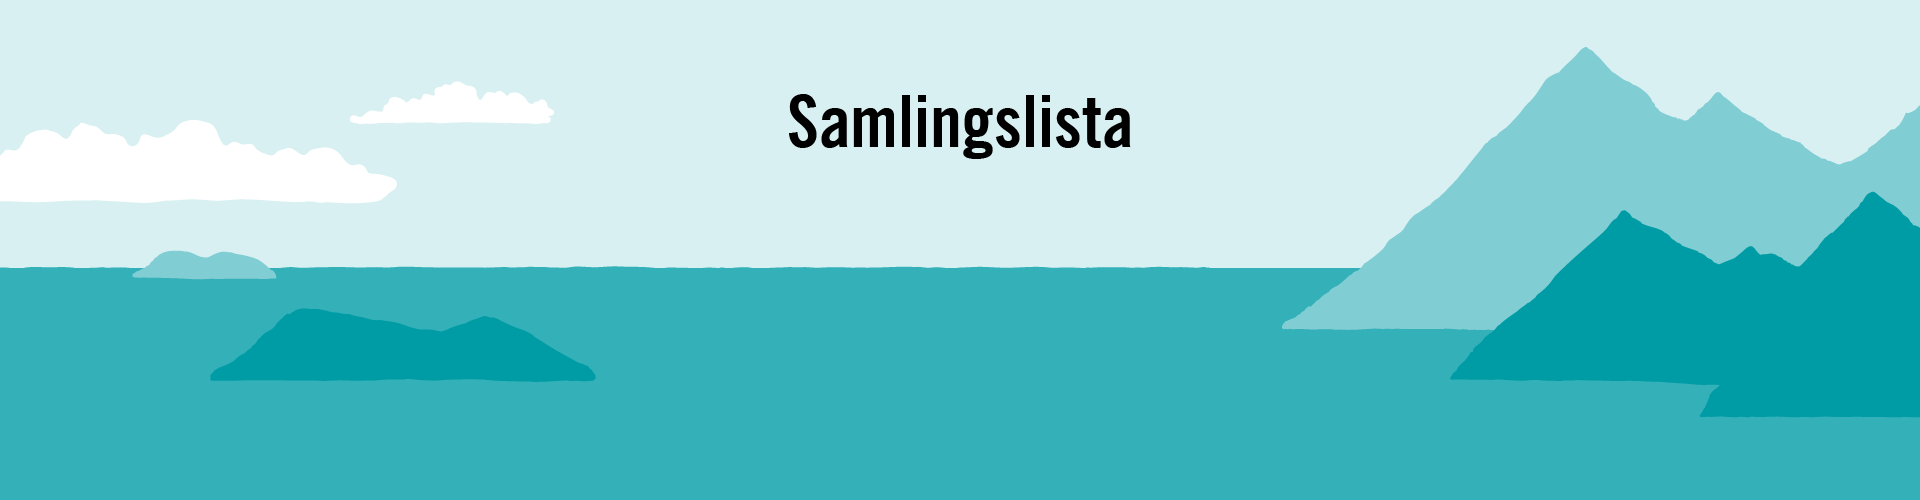 Partiet Samlingslista logo